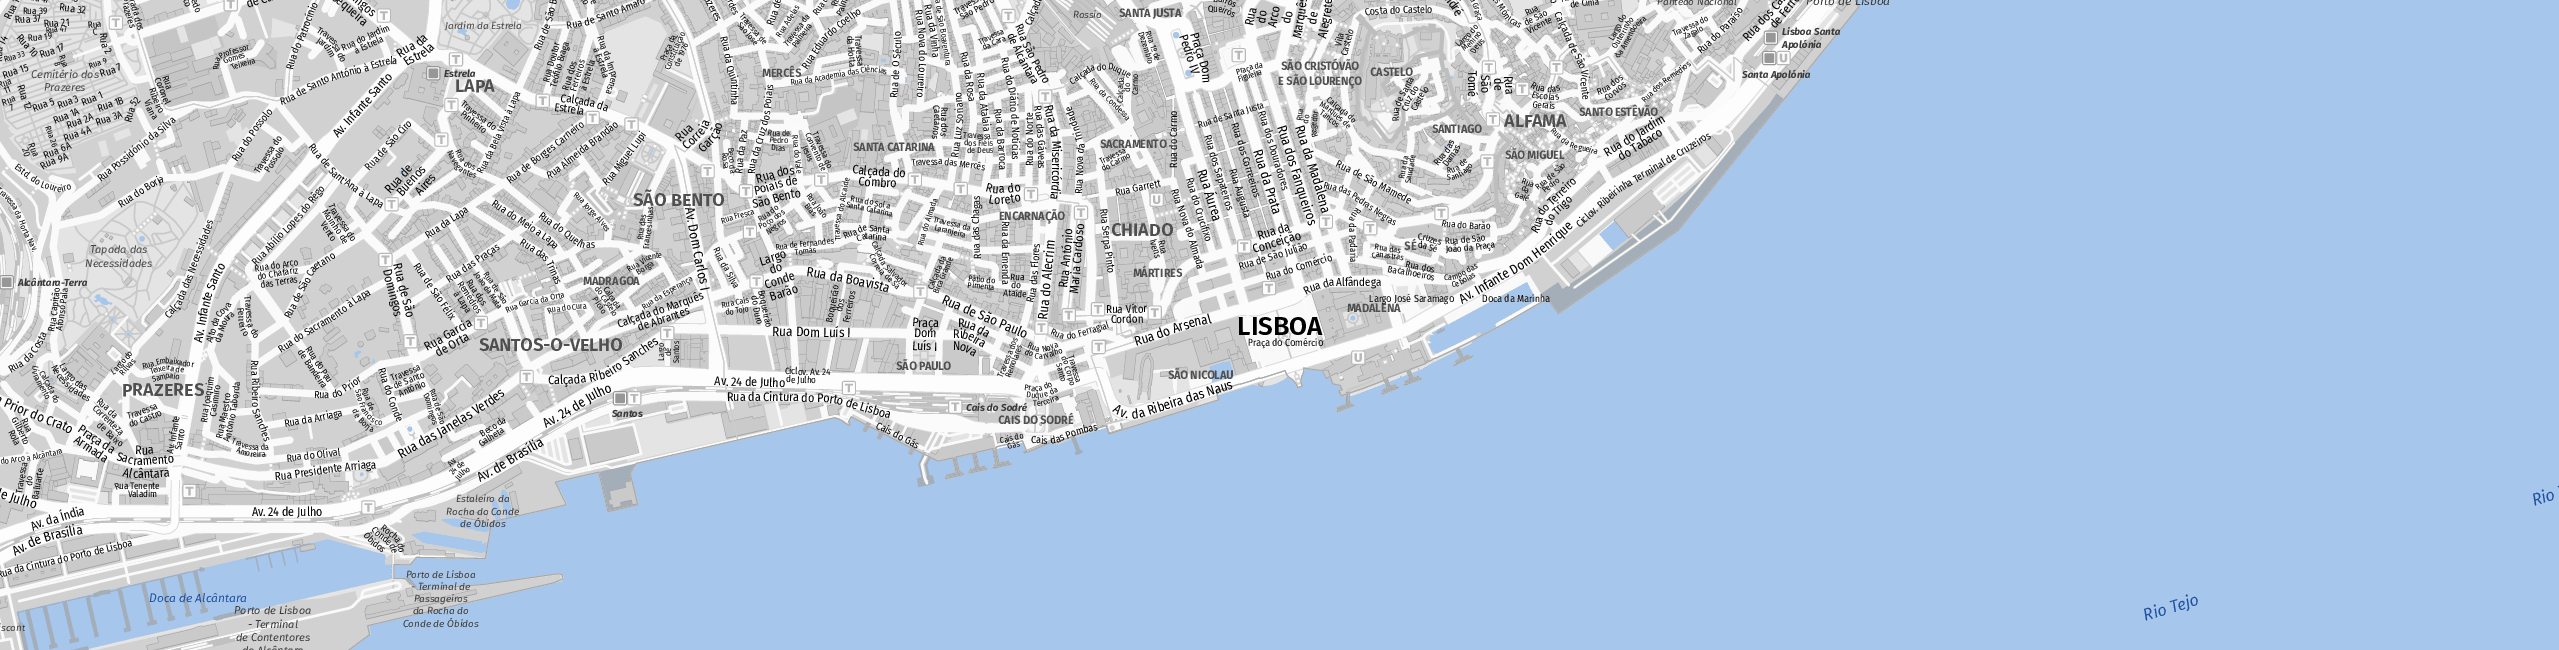 Stadtplan Lisbon zum Downloaden.